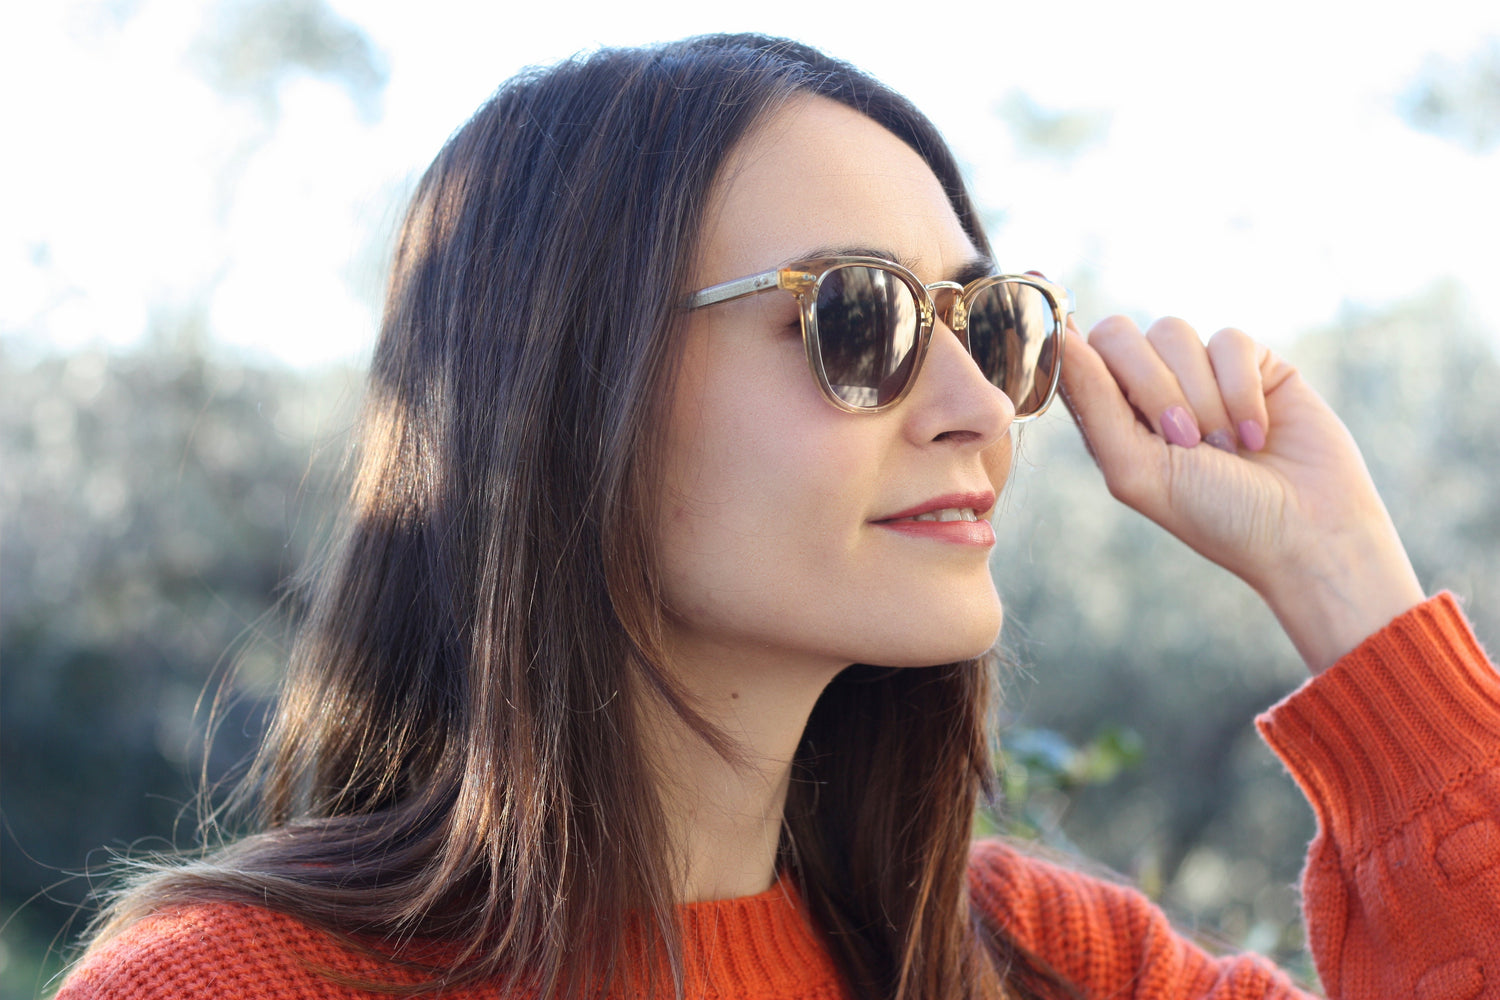 Where Can I Buy Blue Blocker Sunglasses? | KOALAEYE OPTICAL